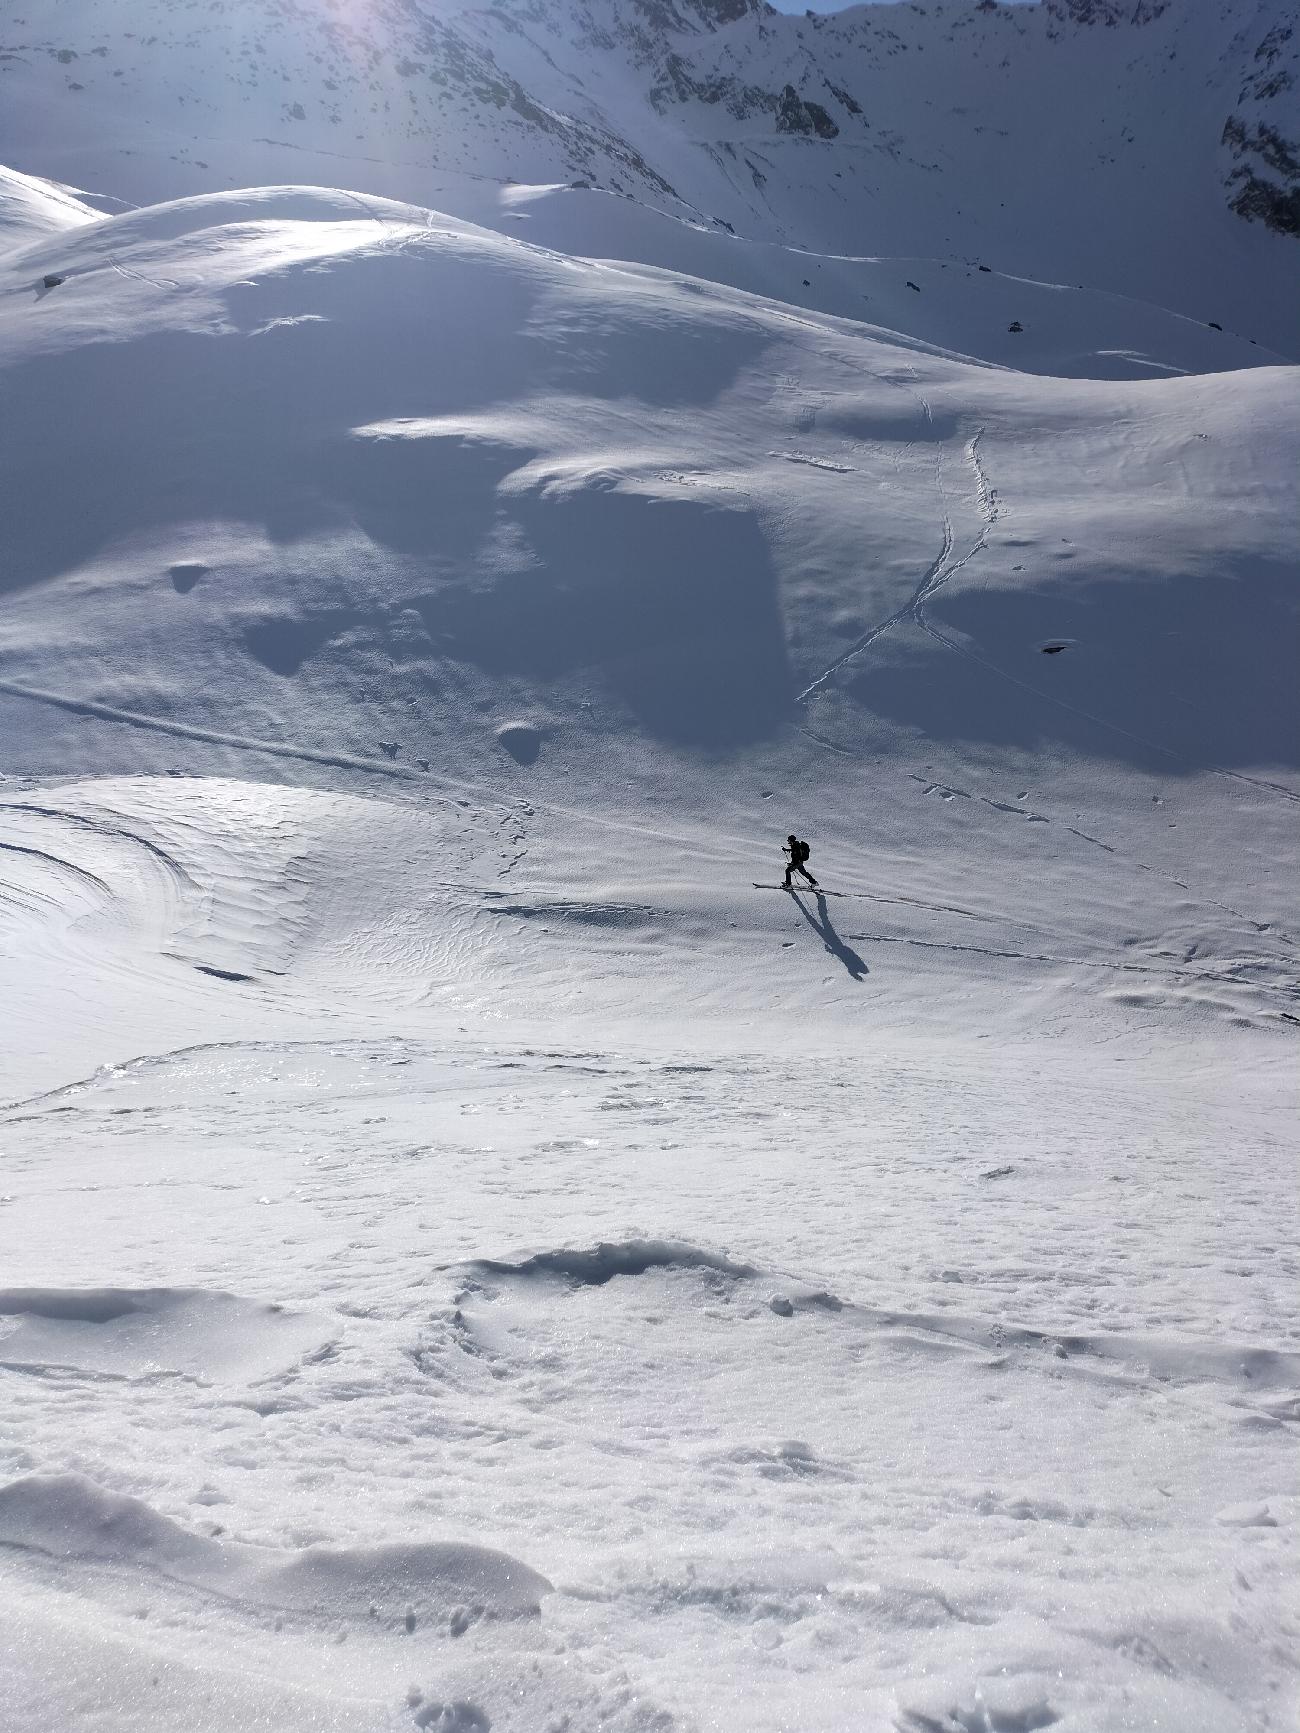 Scialpinismo Valle d'Aosta